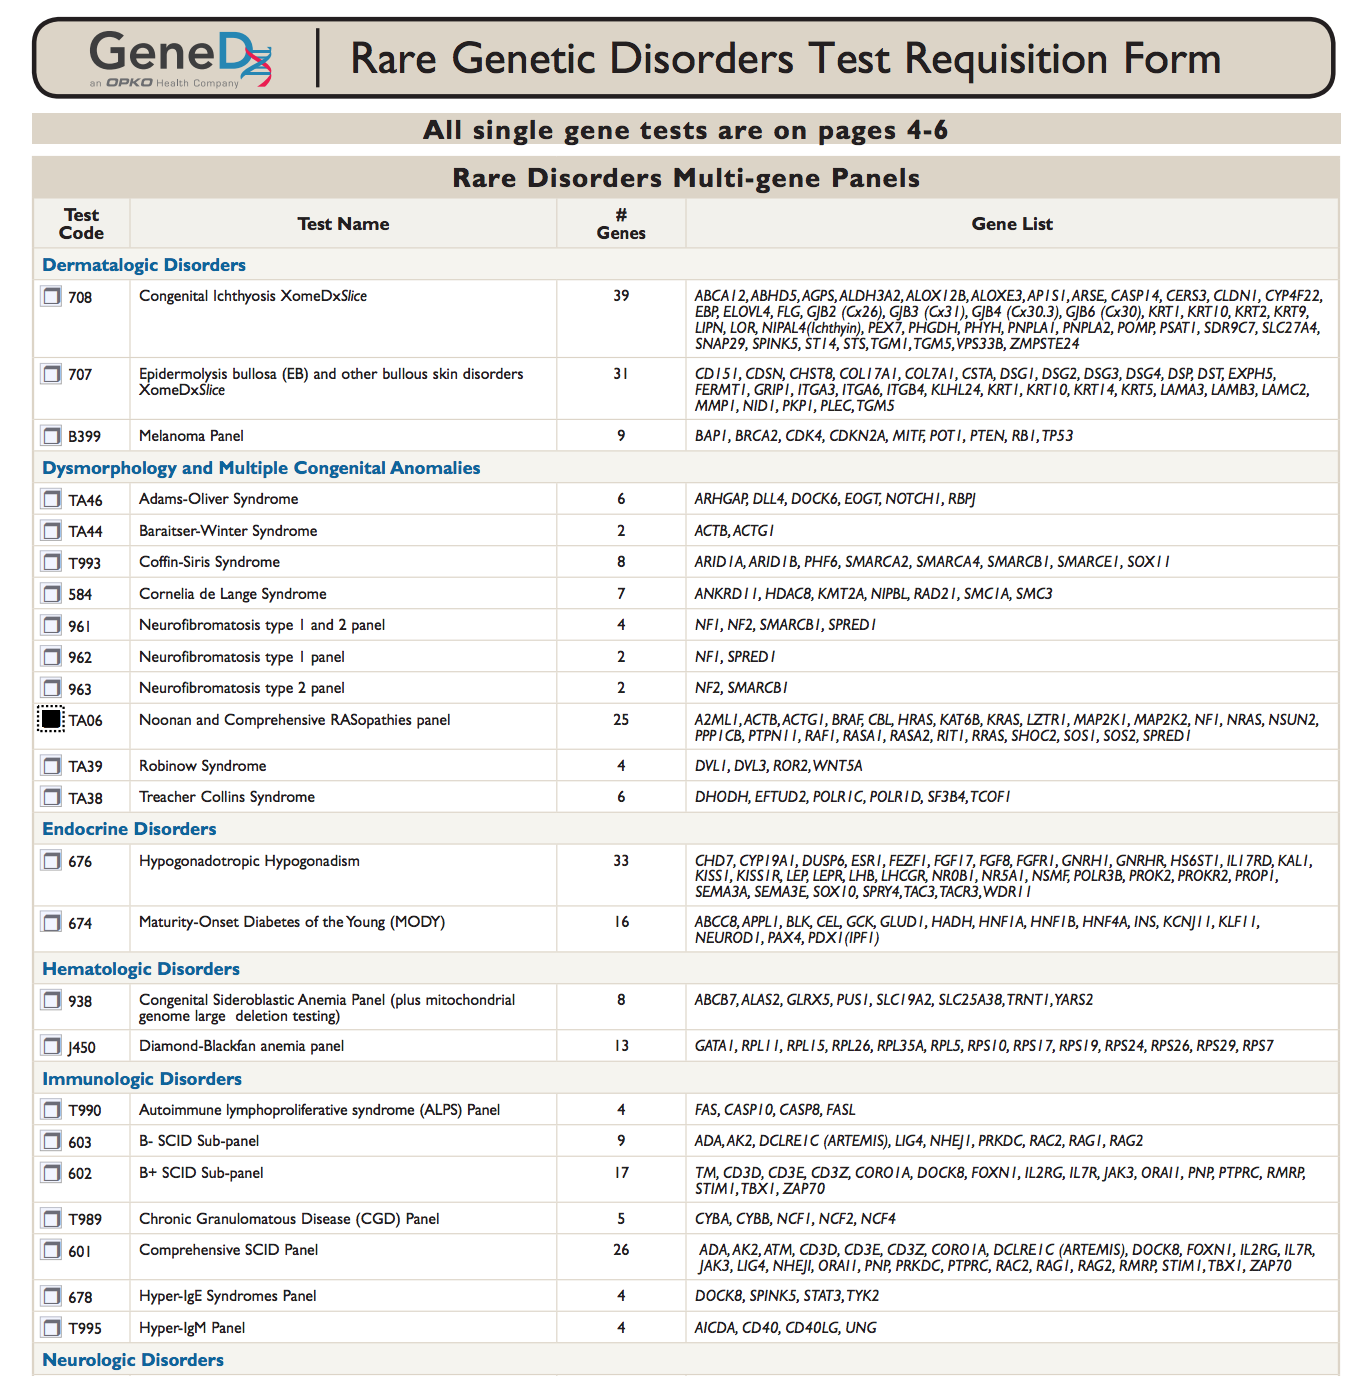 検査項目とそのコード、名称、検査対象の遺伝子数およびそのリストを記載した一覧表